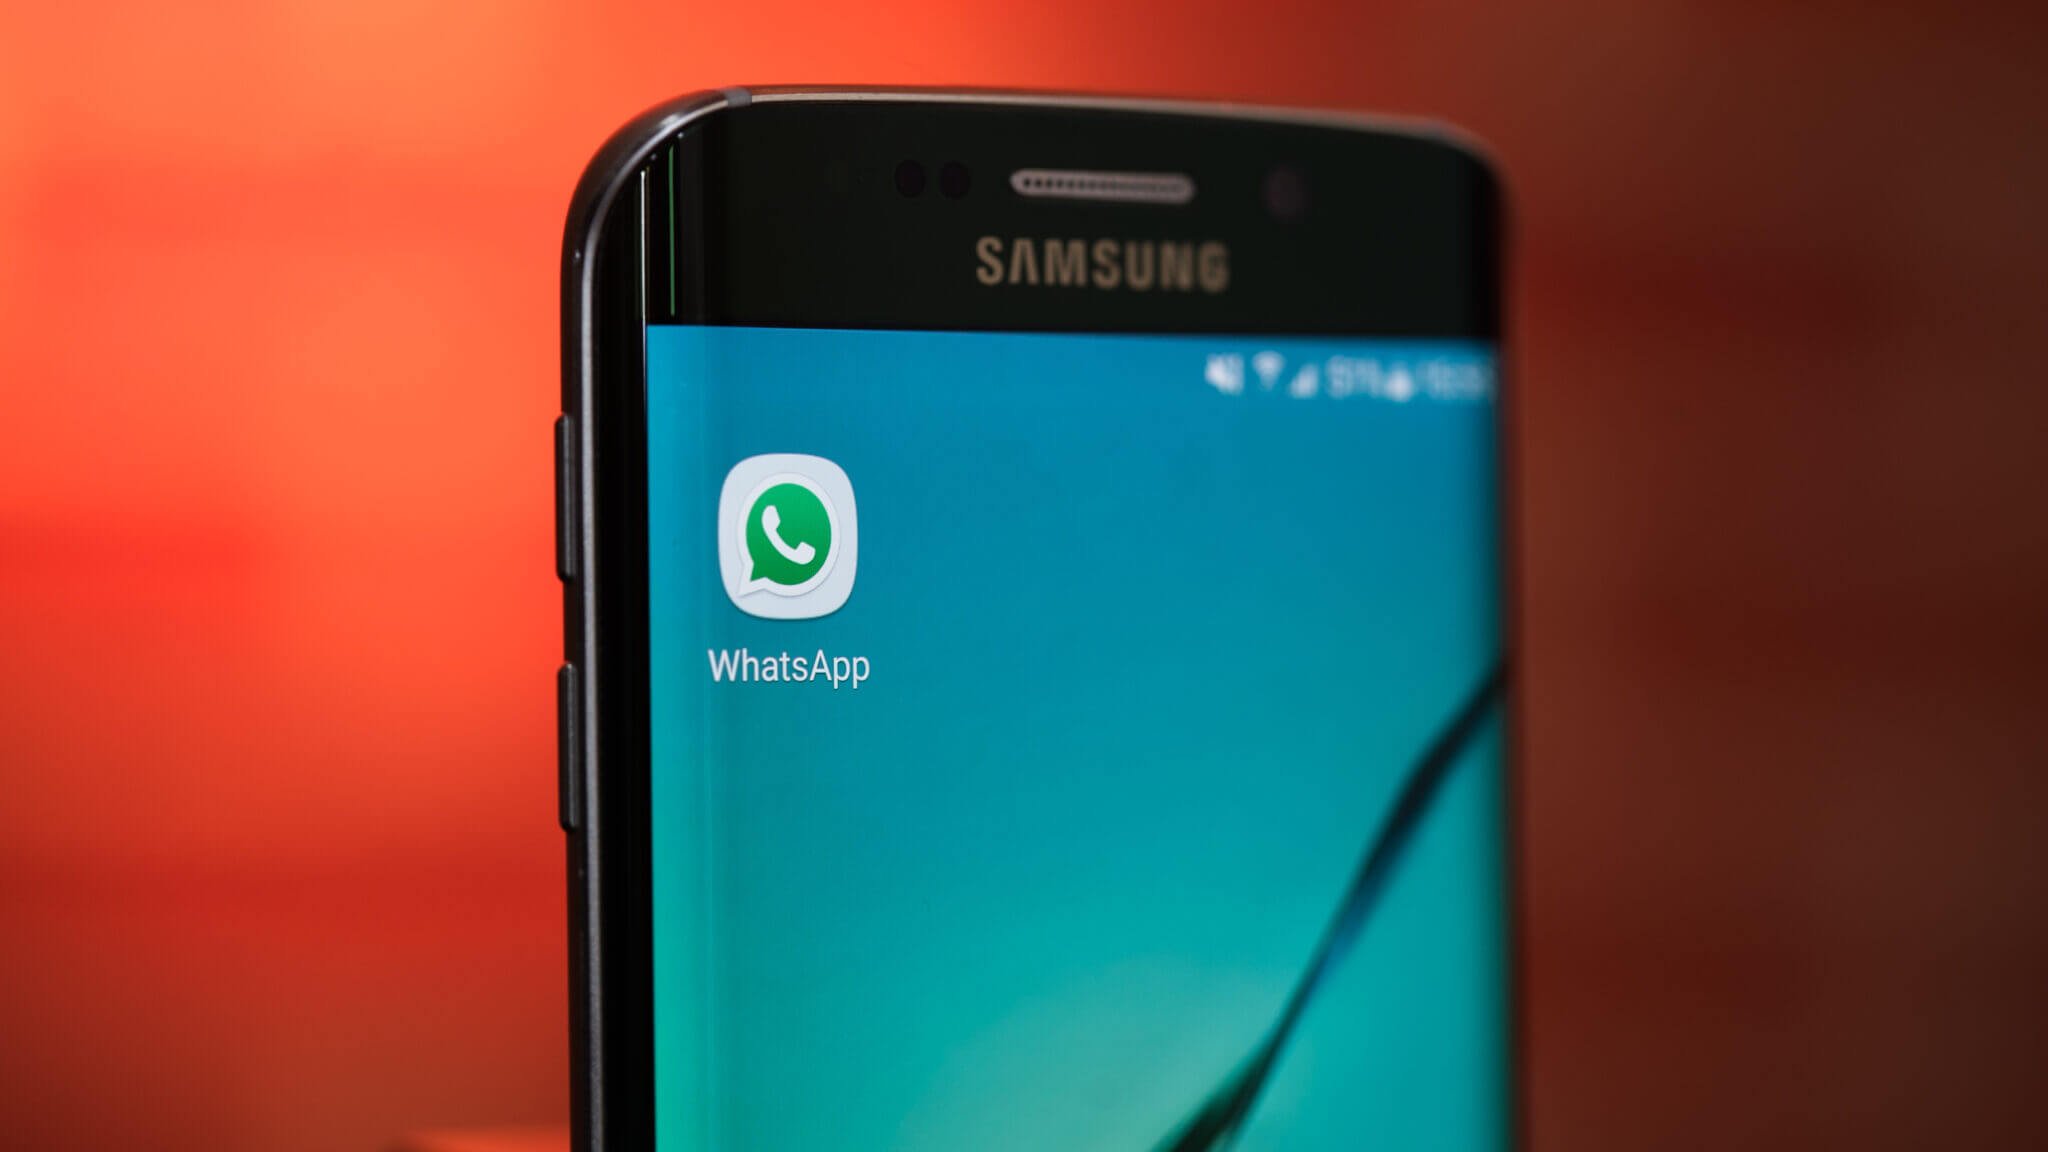 Как пользоваться WhatsApp на Android сразу с двух номеров